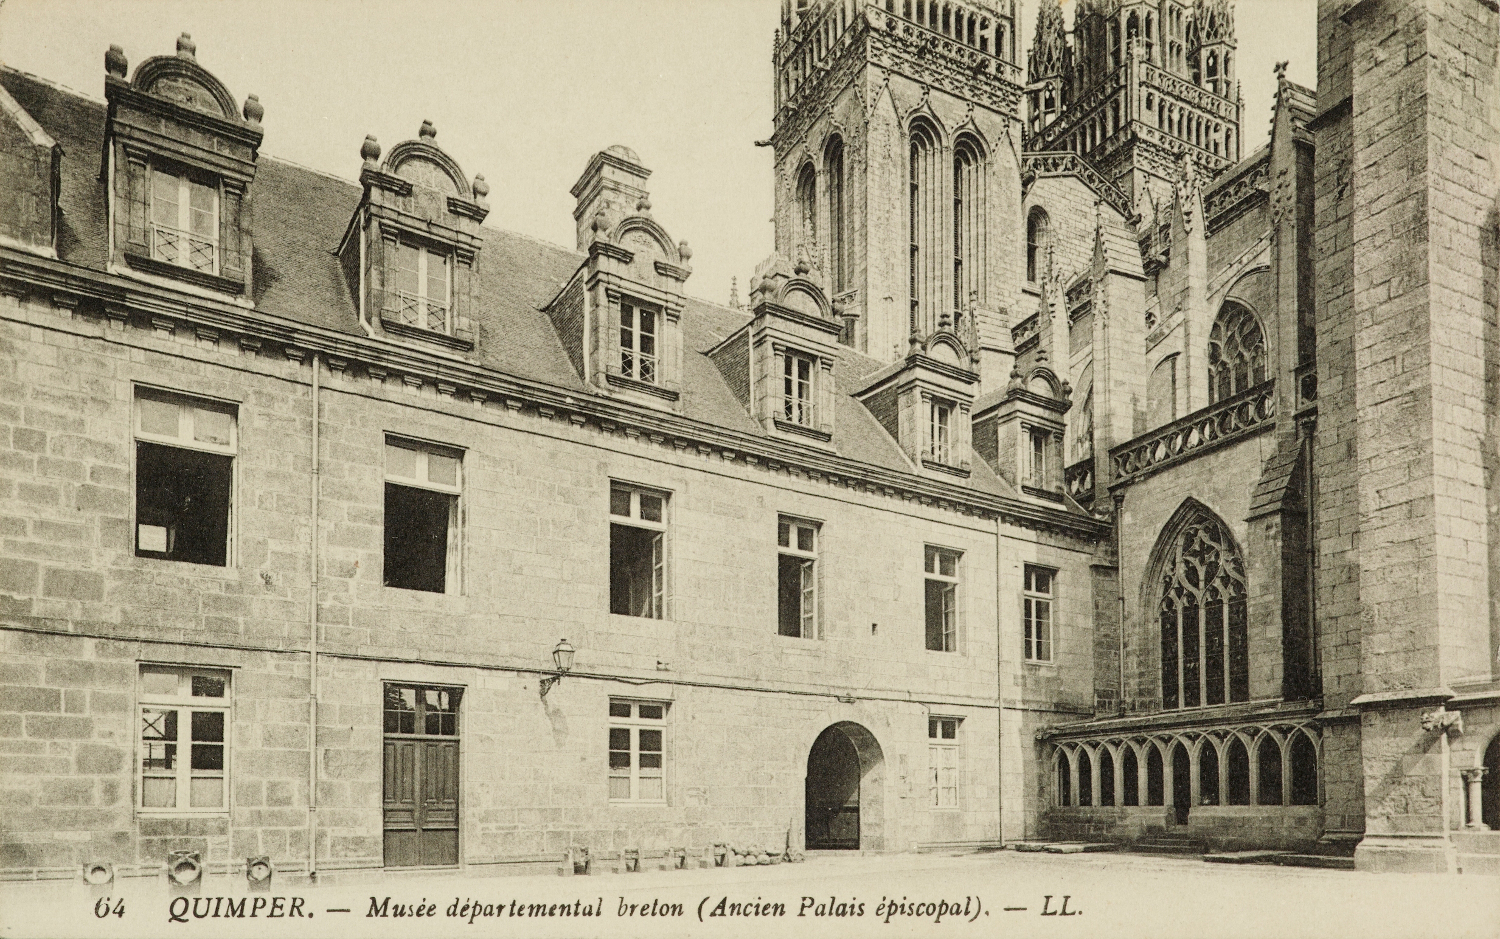 Le Musée départemental breton de Quimper que dirige, à partir de 1883, François-Marie Luzel (Carte postale). Musée de Bretagne: 981.0024.504.